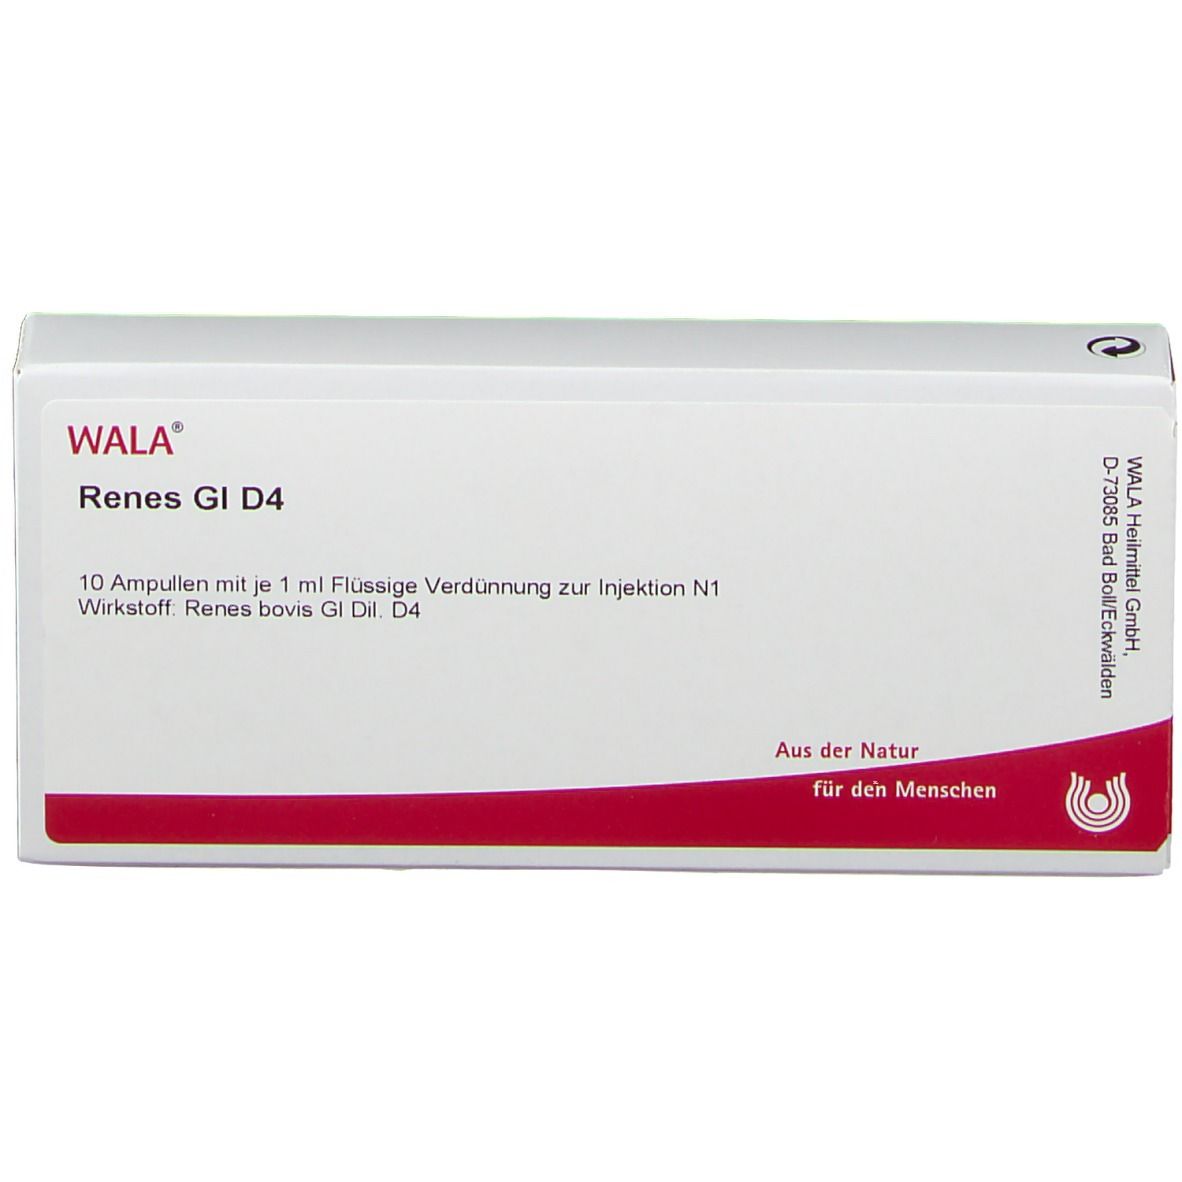 WALA® Renes Gl D 4